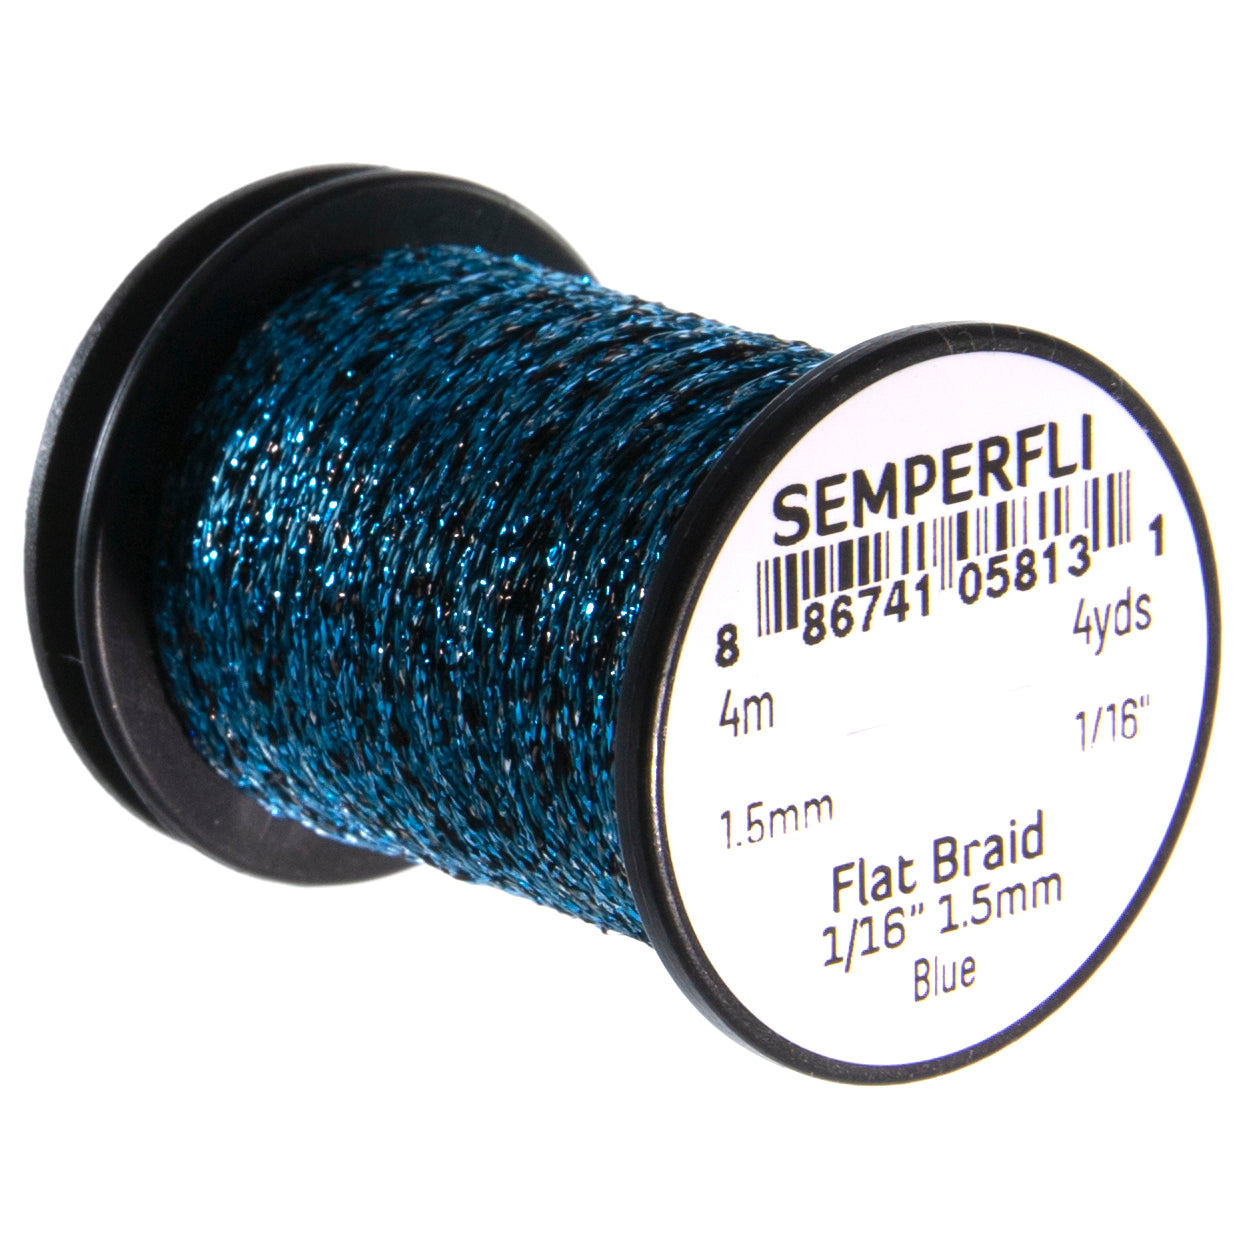 SemperFli Flat Braid 1.5mm 1/16